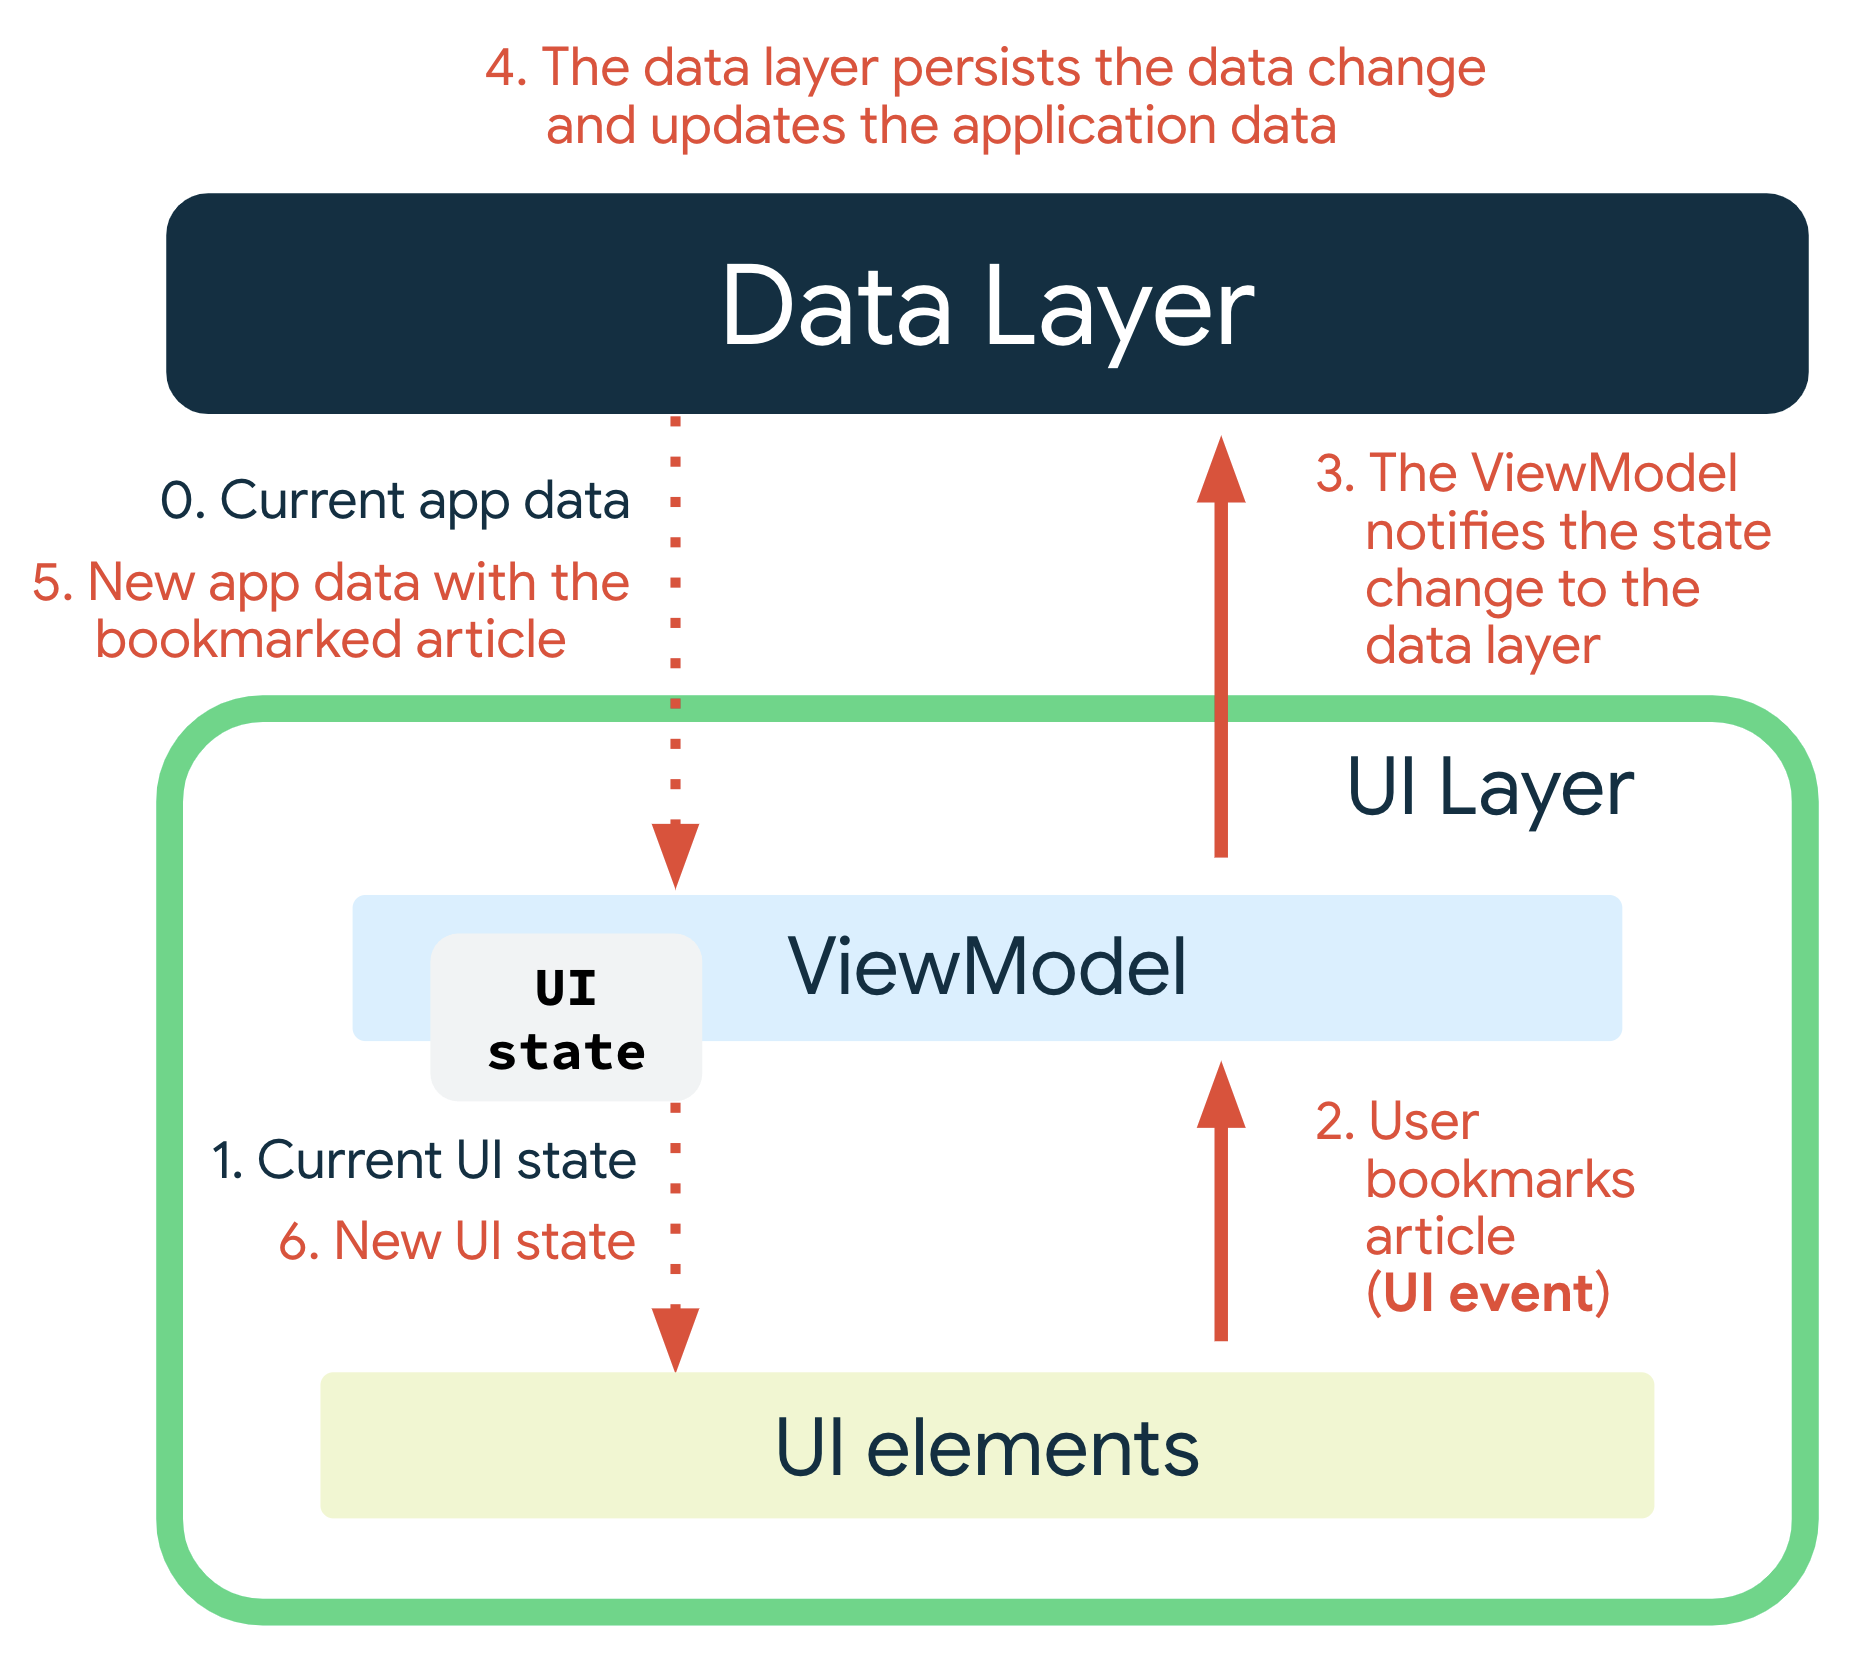 當使用者將某篇報導加入書籤時，就會發生 UI 事件。ViewModel 會通知資料層狀態變更。資料層會保留資料變更，並更新應用程式資料。包含已書籤報導的全新應用程式資料會傳遞至 ViewModel，系統會因此產生新的 UI 狀態，並將其傳遞至 UI 元素進行顯示。